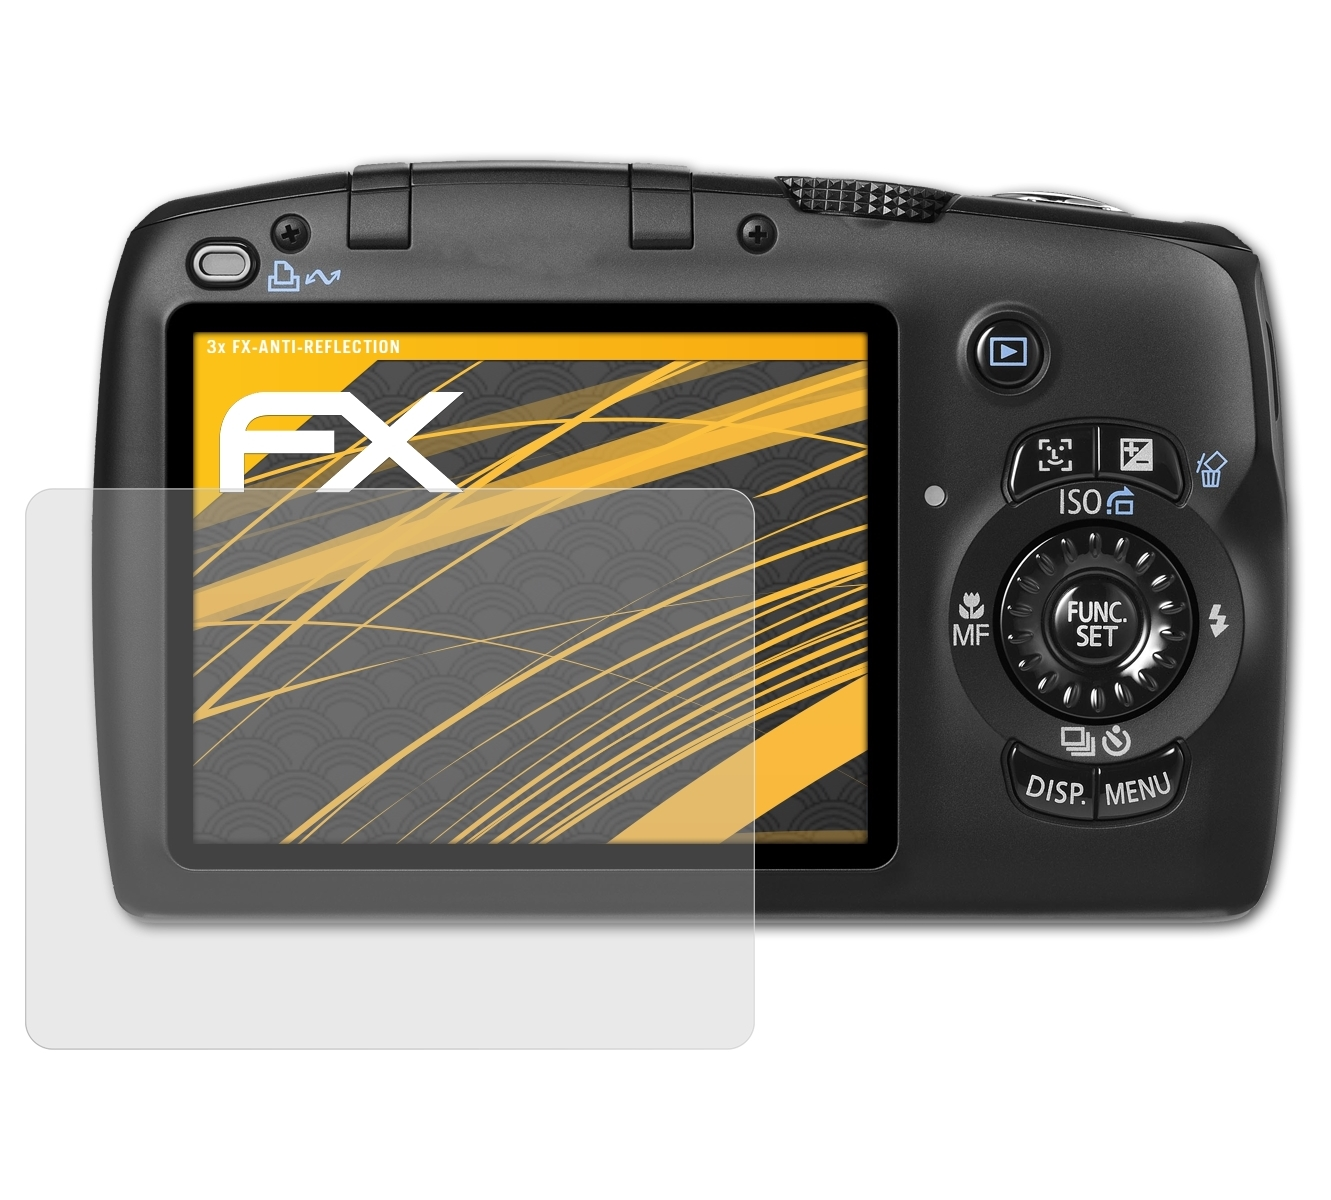 ATFOLIX 3x PowerShot FX-Antireflex Displayschutz(für Canon IS) SX110